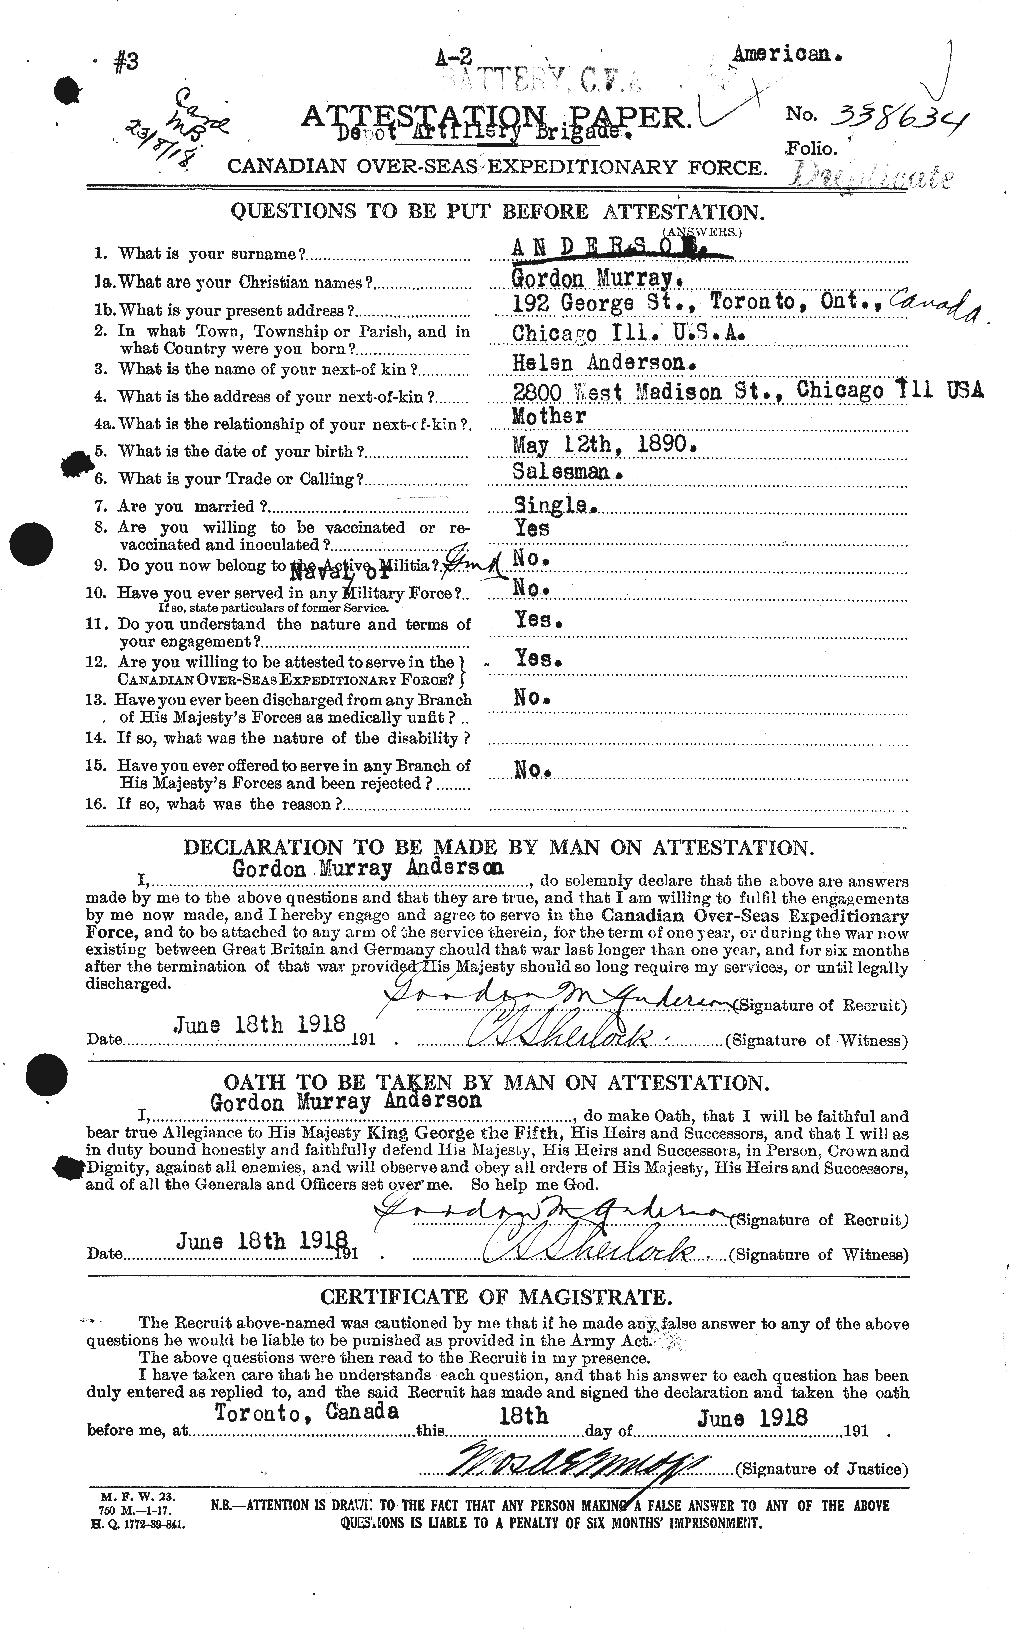 Dossiers du Personnel de la Première Guerre mondiale - CEC 209662a